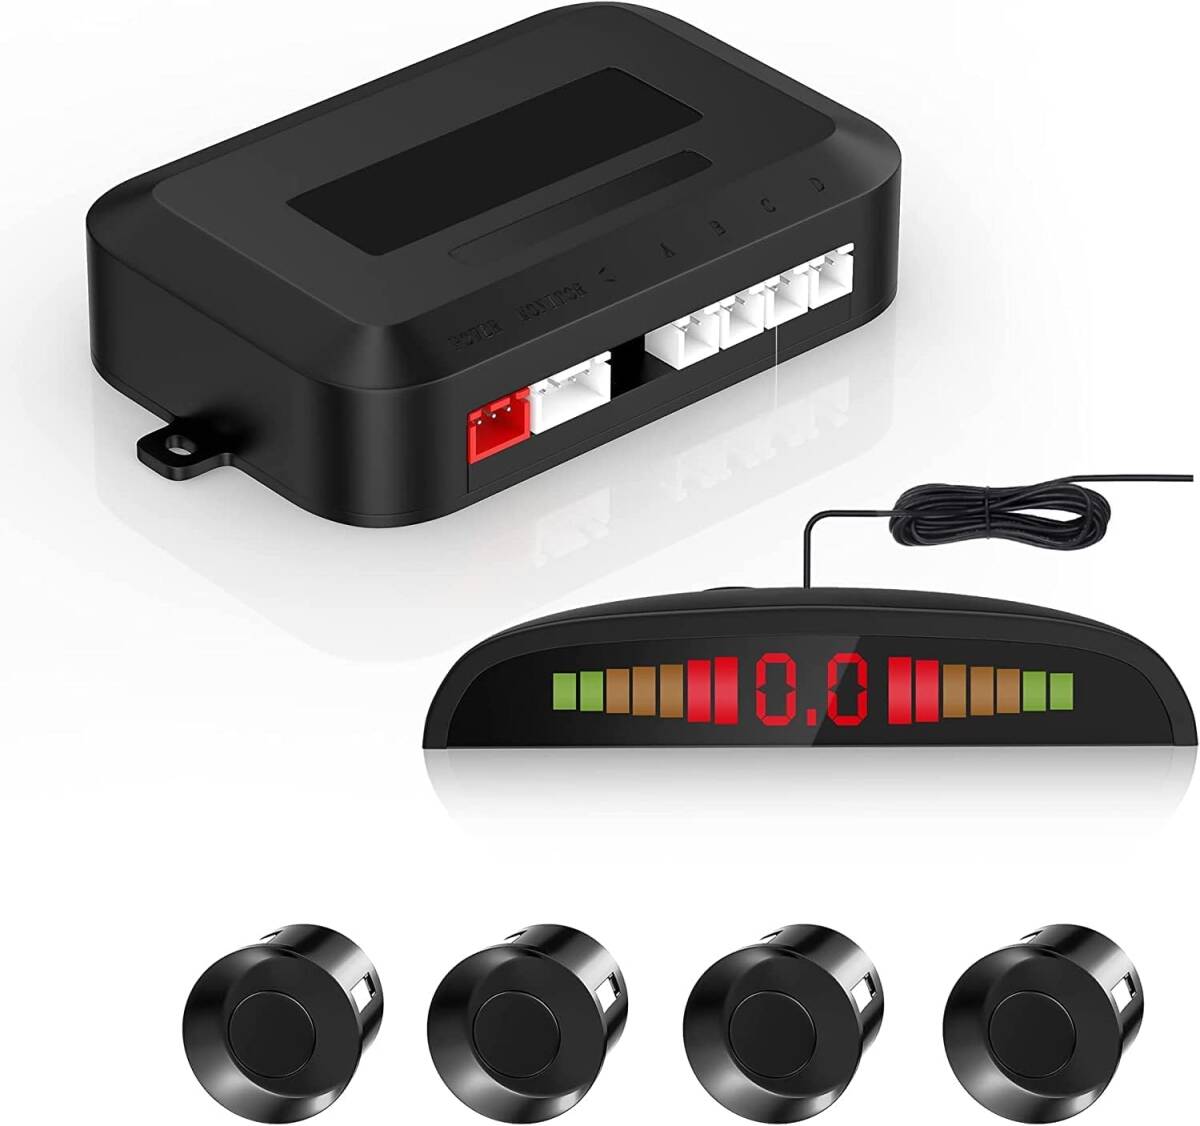 車ソナーコーナーセンサーカーセンサー 障害物センサー LED距離表示 パッキングセンサー 通知音 Cocar バックアップパーキンの画像1